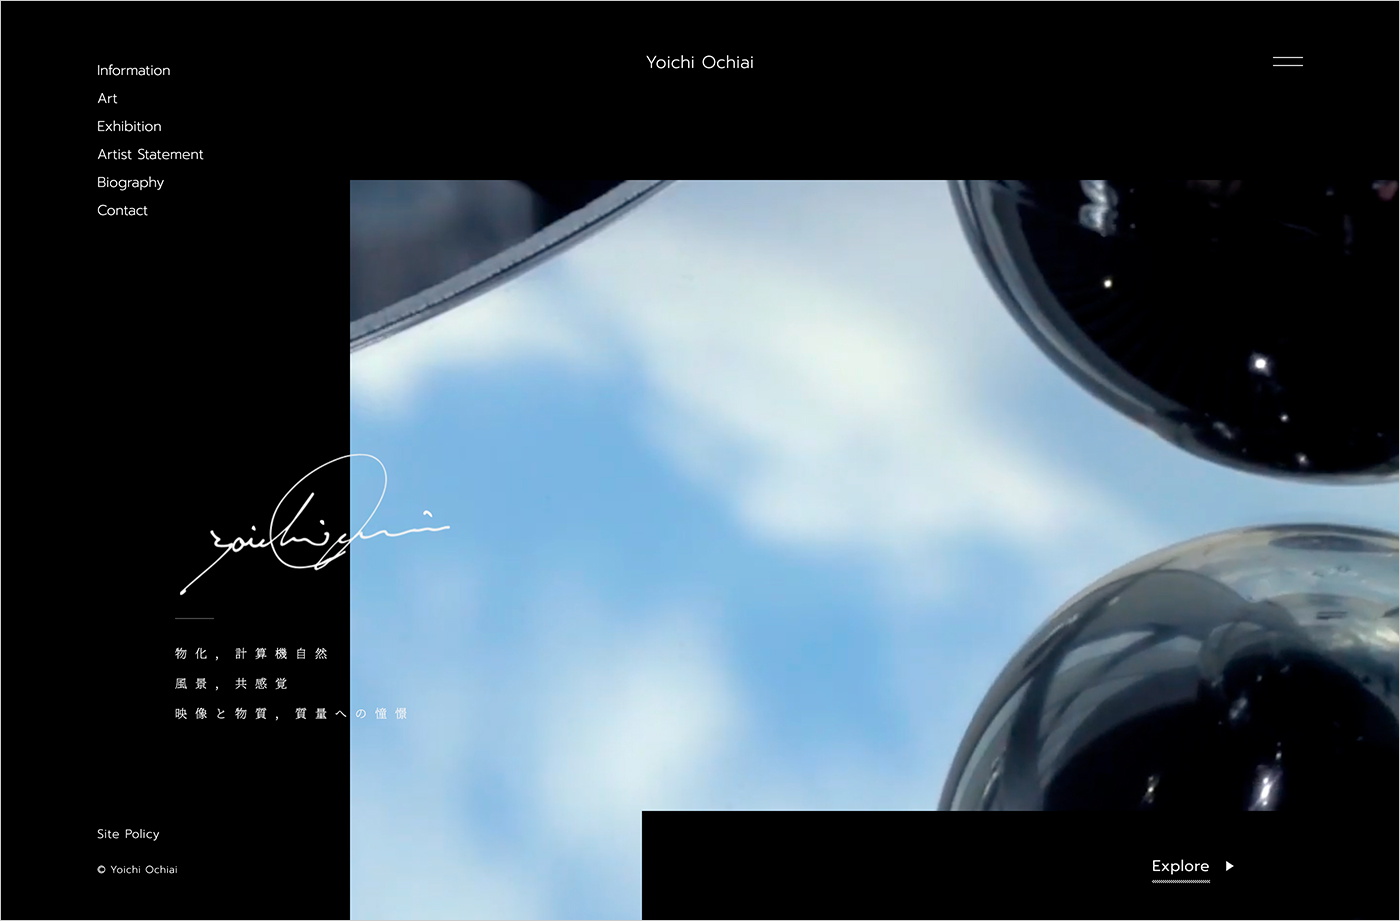 落合陽一公式ページ / Yoichi Ochiai Official Portfolioウェブサイトの画面キャプチャ画像